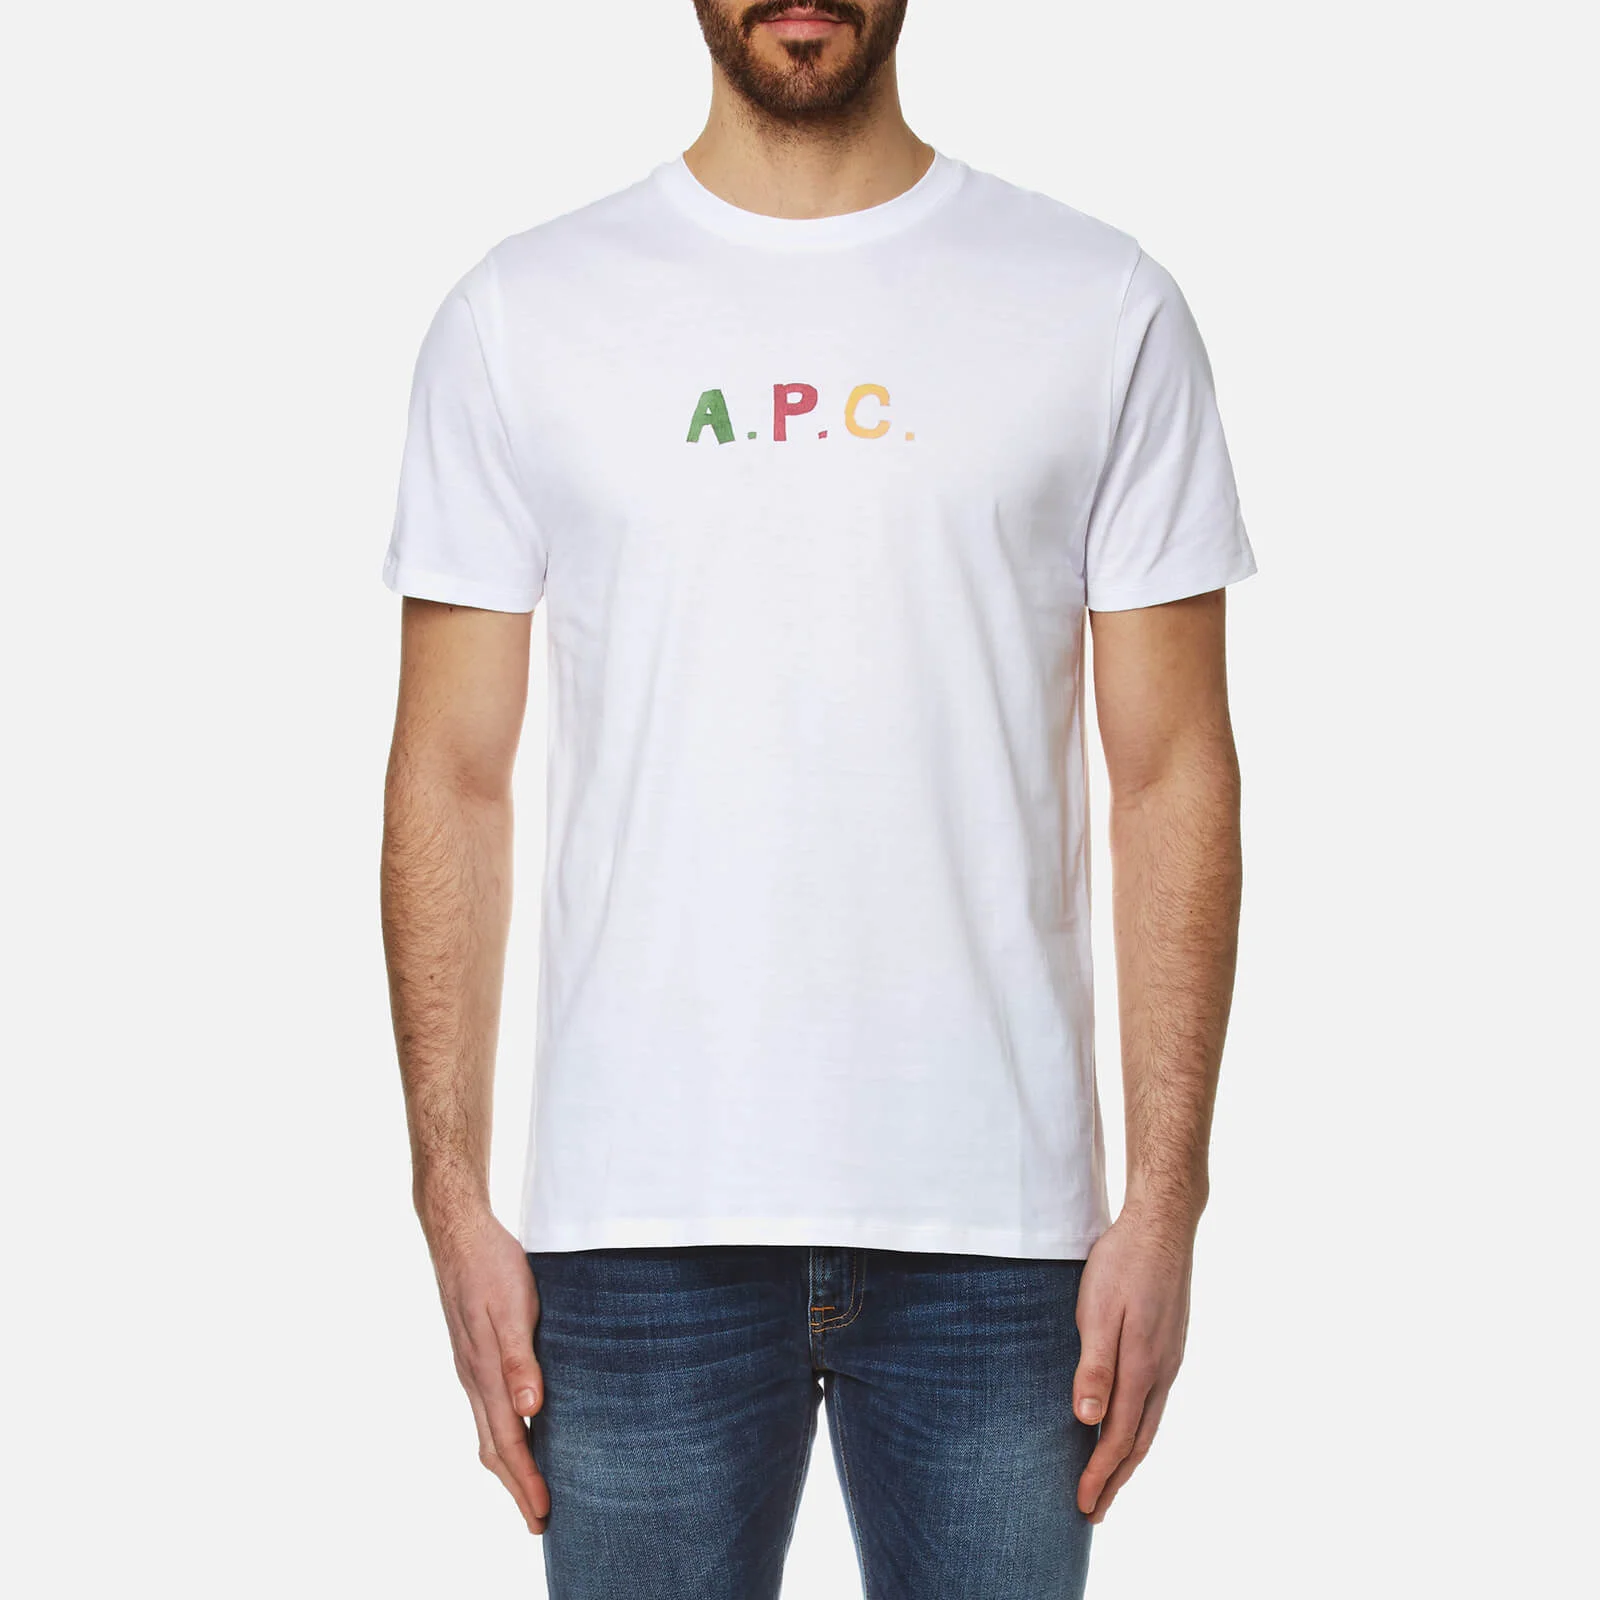 A.P.C. Men's Couleurs T-Shirt - Blanc Image 1